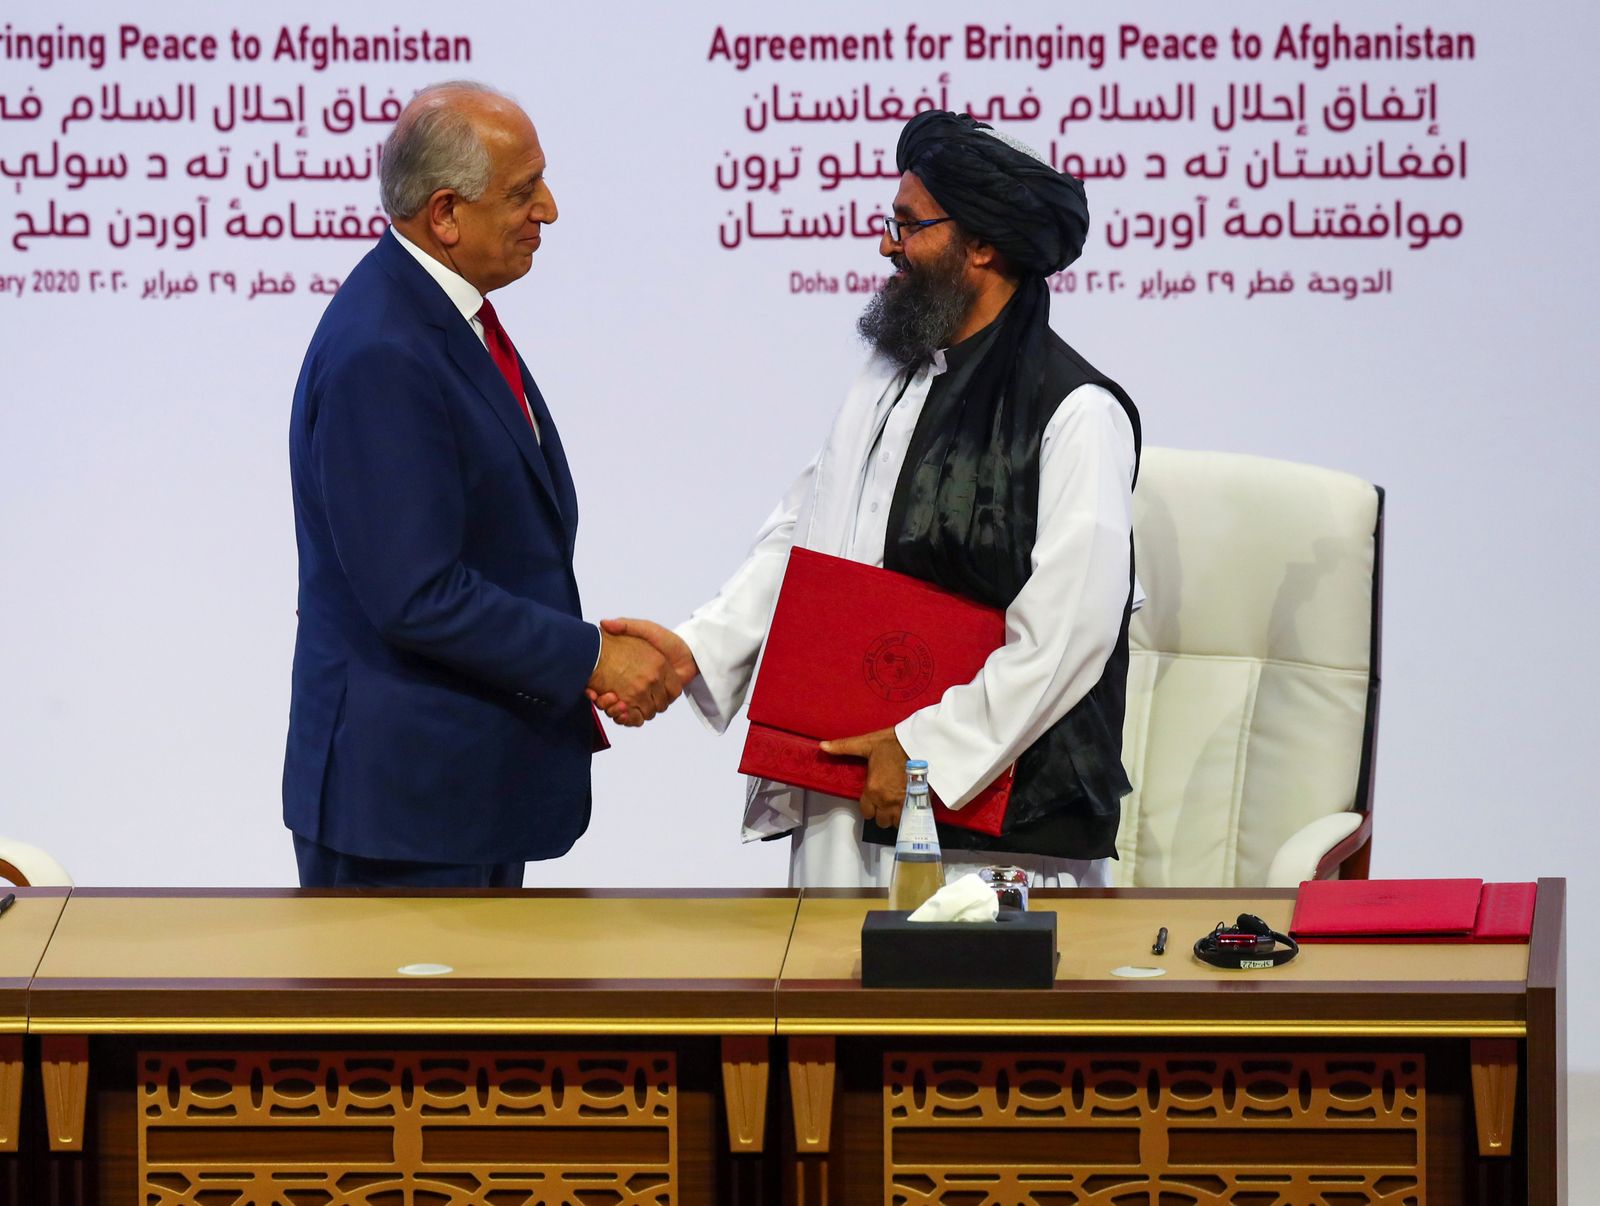 المبعوث الأميركي الخاص للمصالحة الأفغانية زلماي خليل زاد ونائب رئيس طالبان ملا عبدالغني برادار خلال توقيع الاتفاق بين الجانبين في الدوحة 29 فبراير 2020 - REUTERS